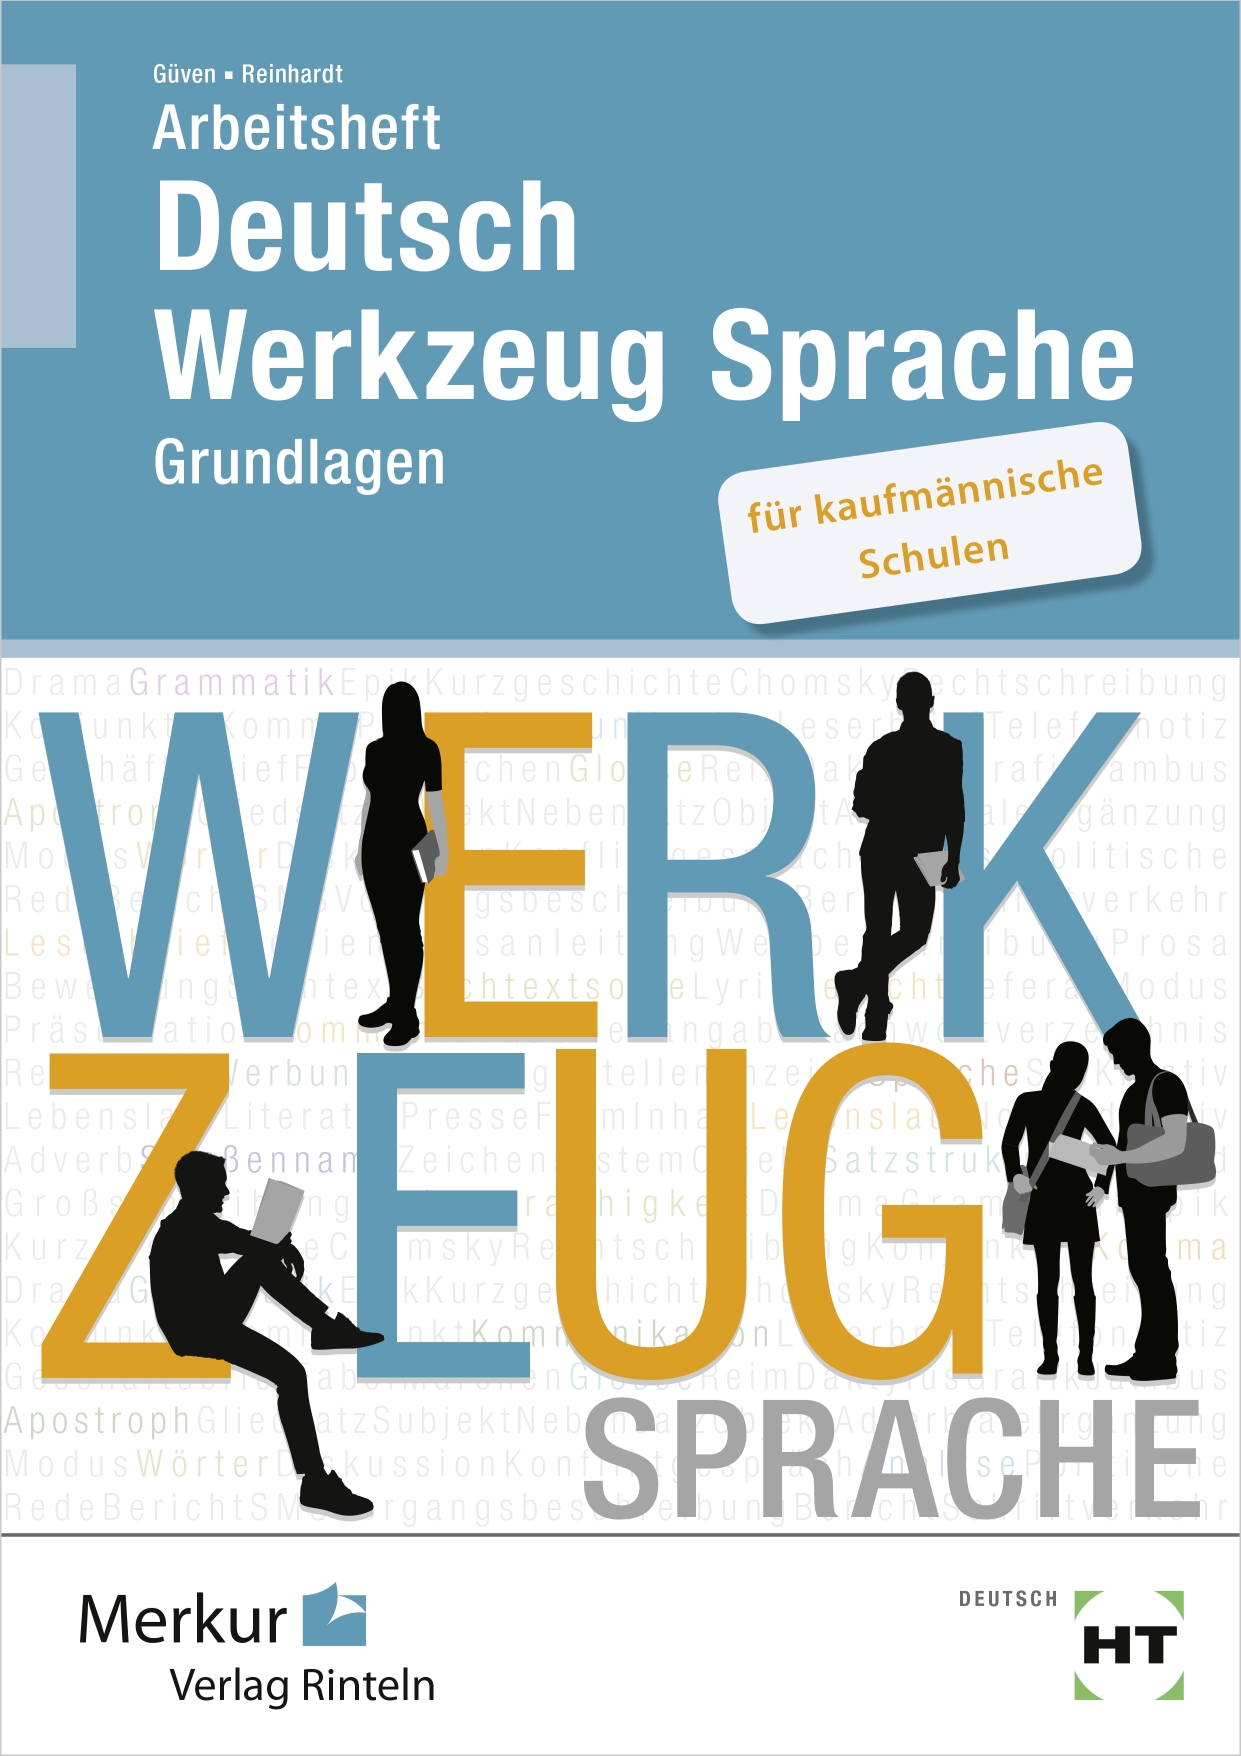 Arbeitsheft Deutsch - Werkzeug Sprache für kaufmännische Schulen Grundlagen